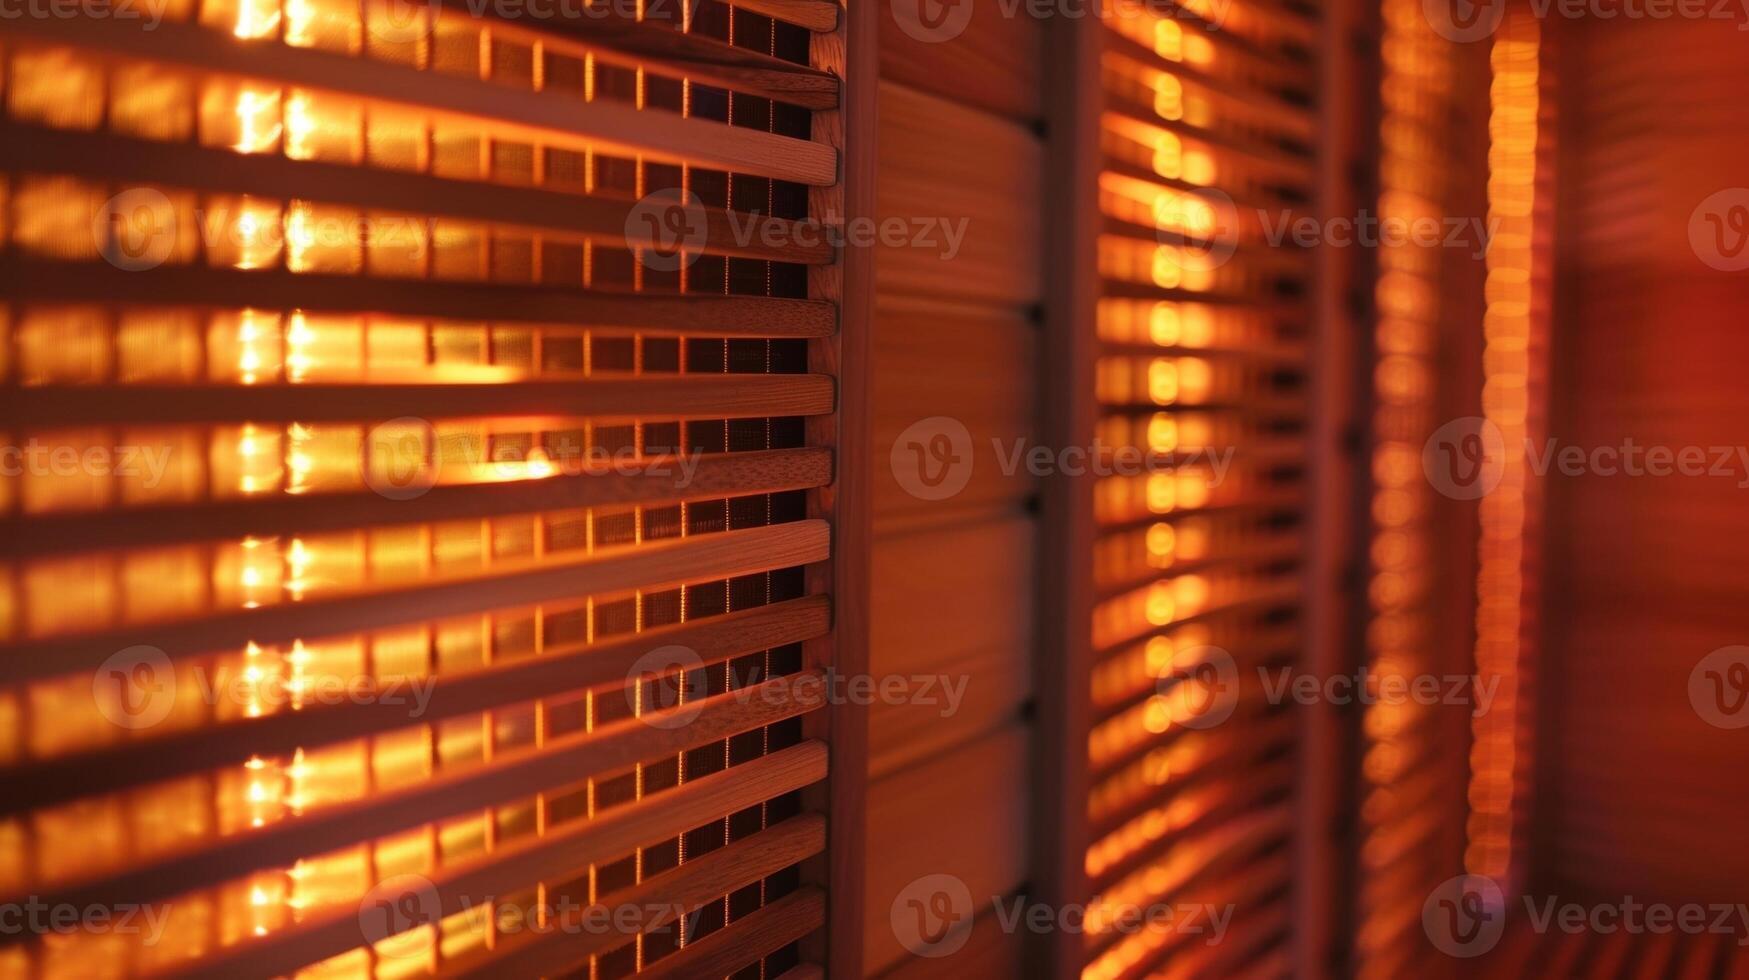 een detailopname van een infrarood sauna's verwarming panelen emitting veilig en behandelen warmte dat traten diep in de longen bevorderen Doorzichtig luchtwegen. foto